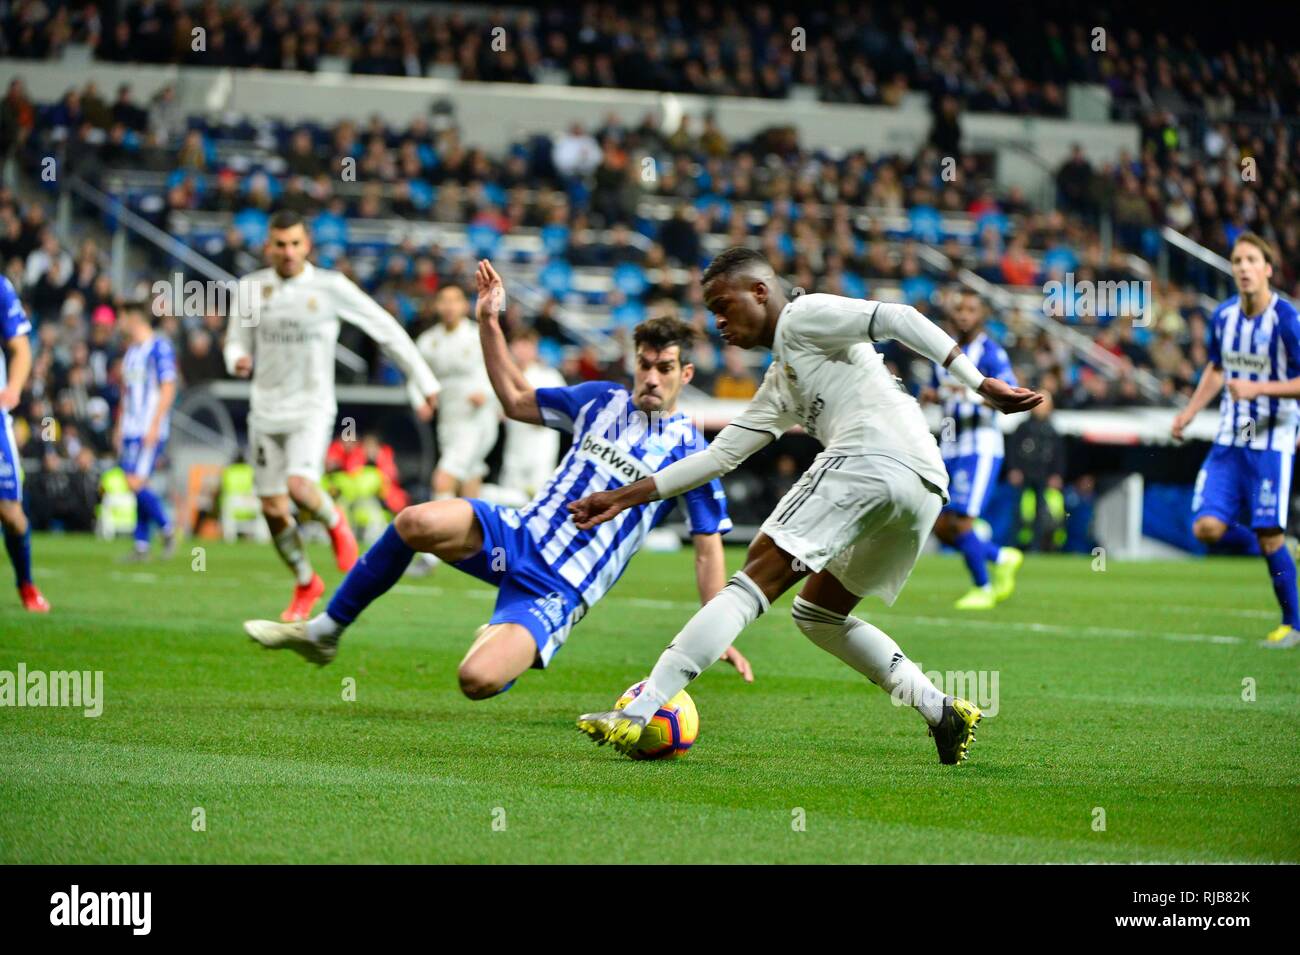 Vinicius Jr. en action. Buts de Benzema, Vinicius Jr. et Mariano donne la victoire à Madrid 3-0 contre Alavés en avant de la cuvette Clásico. Février Banque D'Images